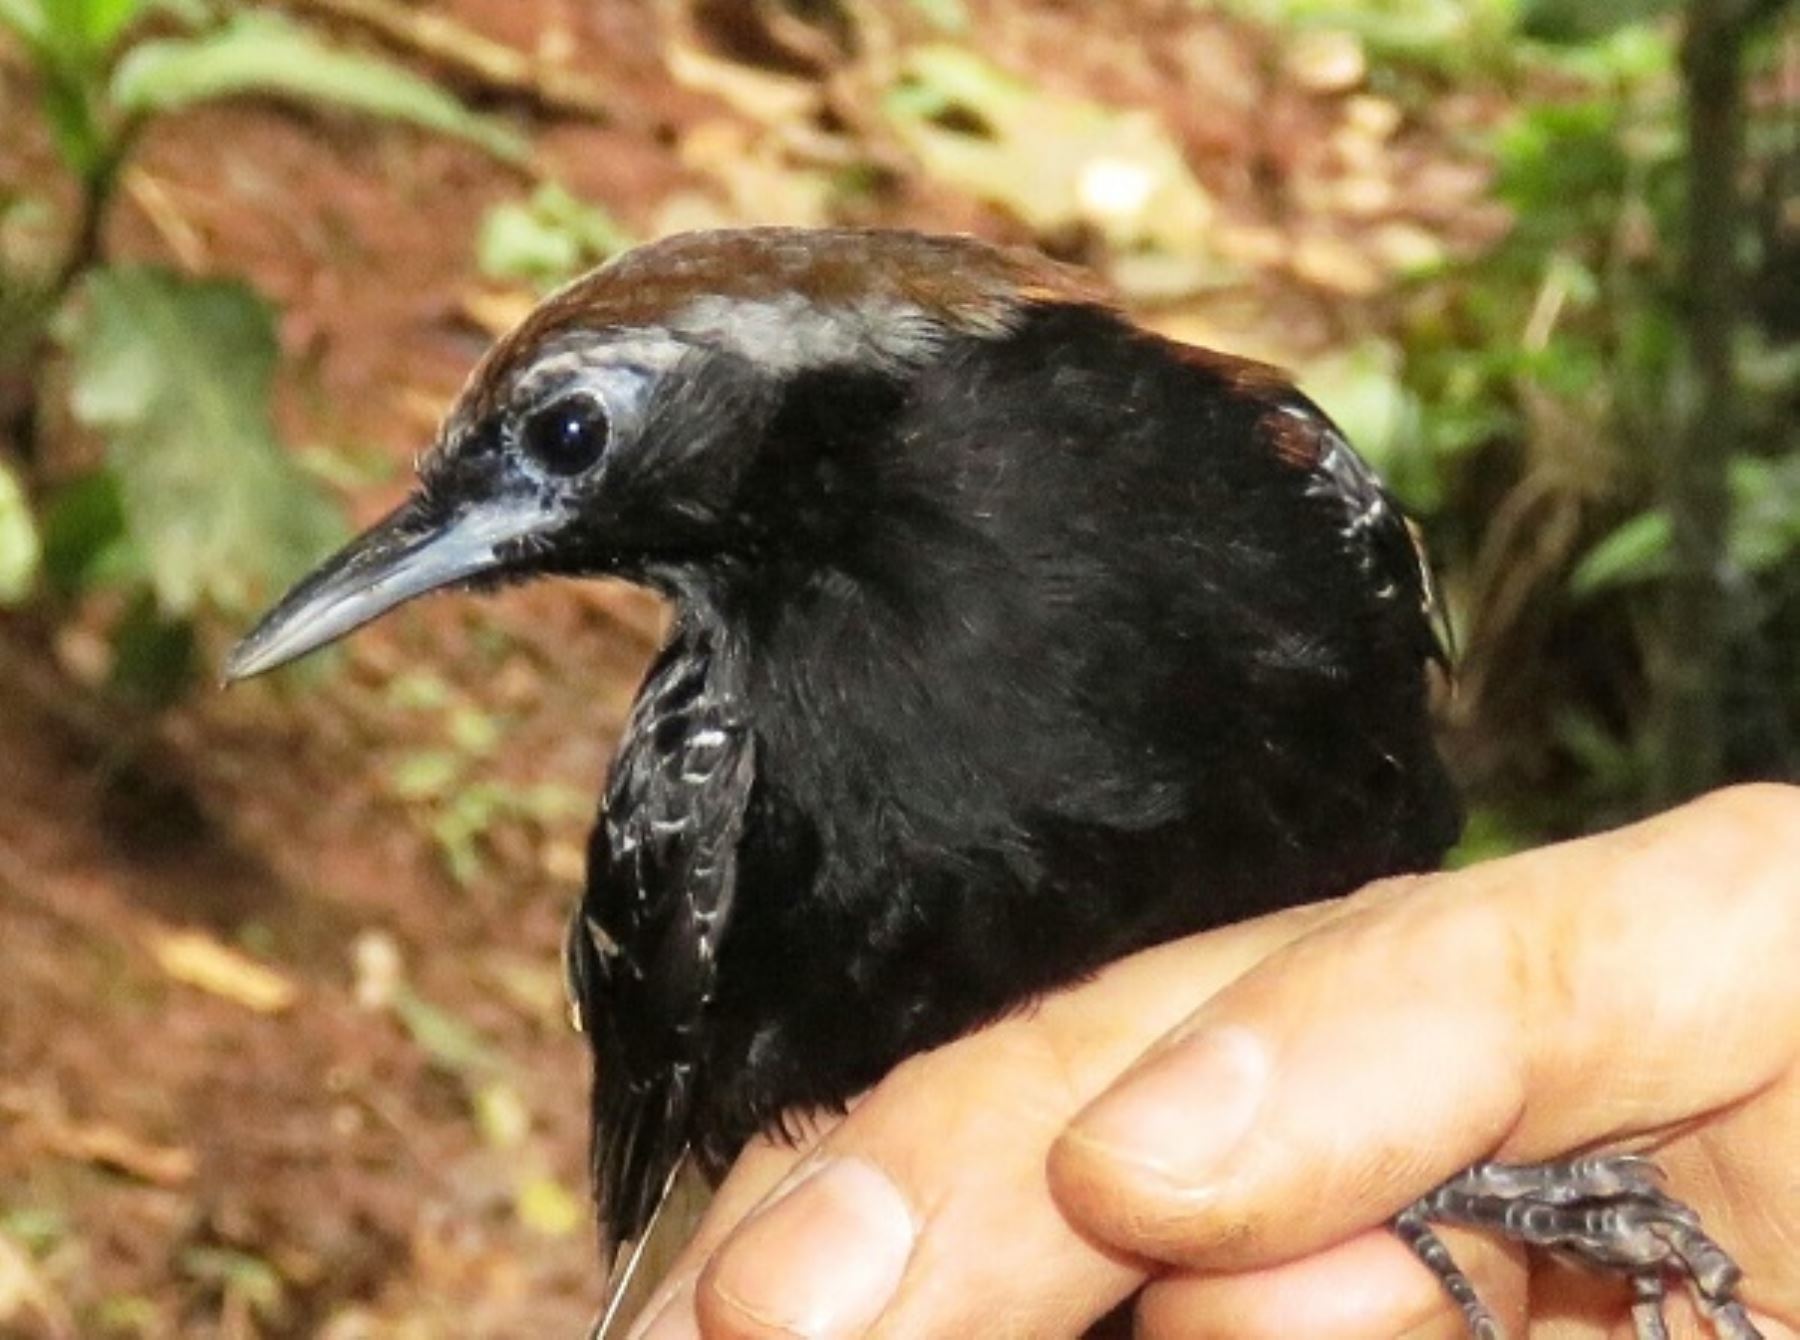 Una nueva especie de ave ha sido descubierta en la zona de amortiguamiento del Parque Nacional Cordillera Azul, en la región San Martín, convirtiéndose en la tercera especie de este tipo identificada en los dos últimos años, reveló el Servicio Nacional de Áreas Naturales Protegidas por el Estado (Sernanp).